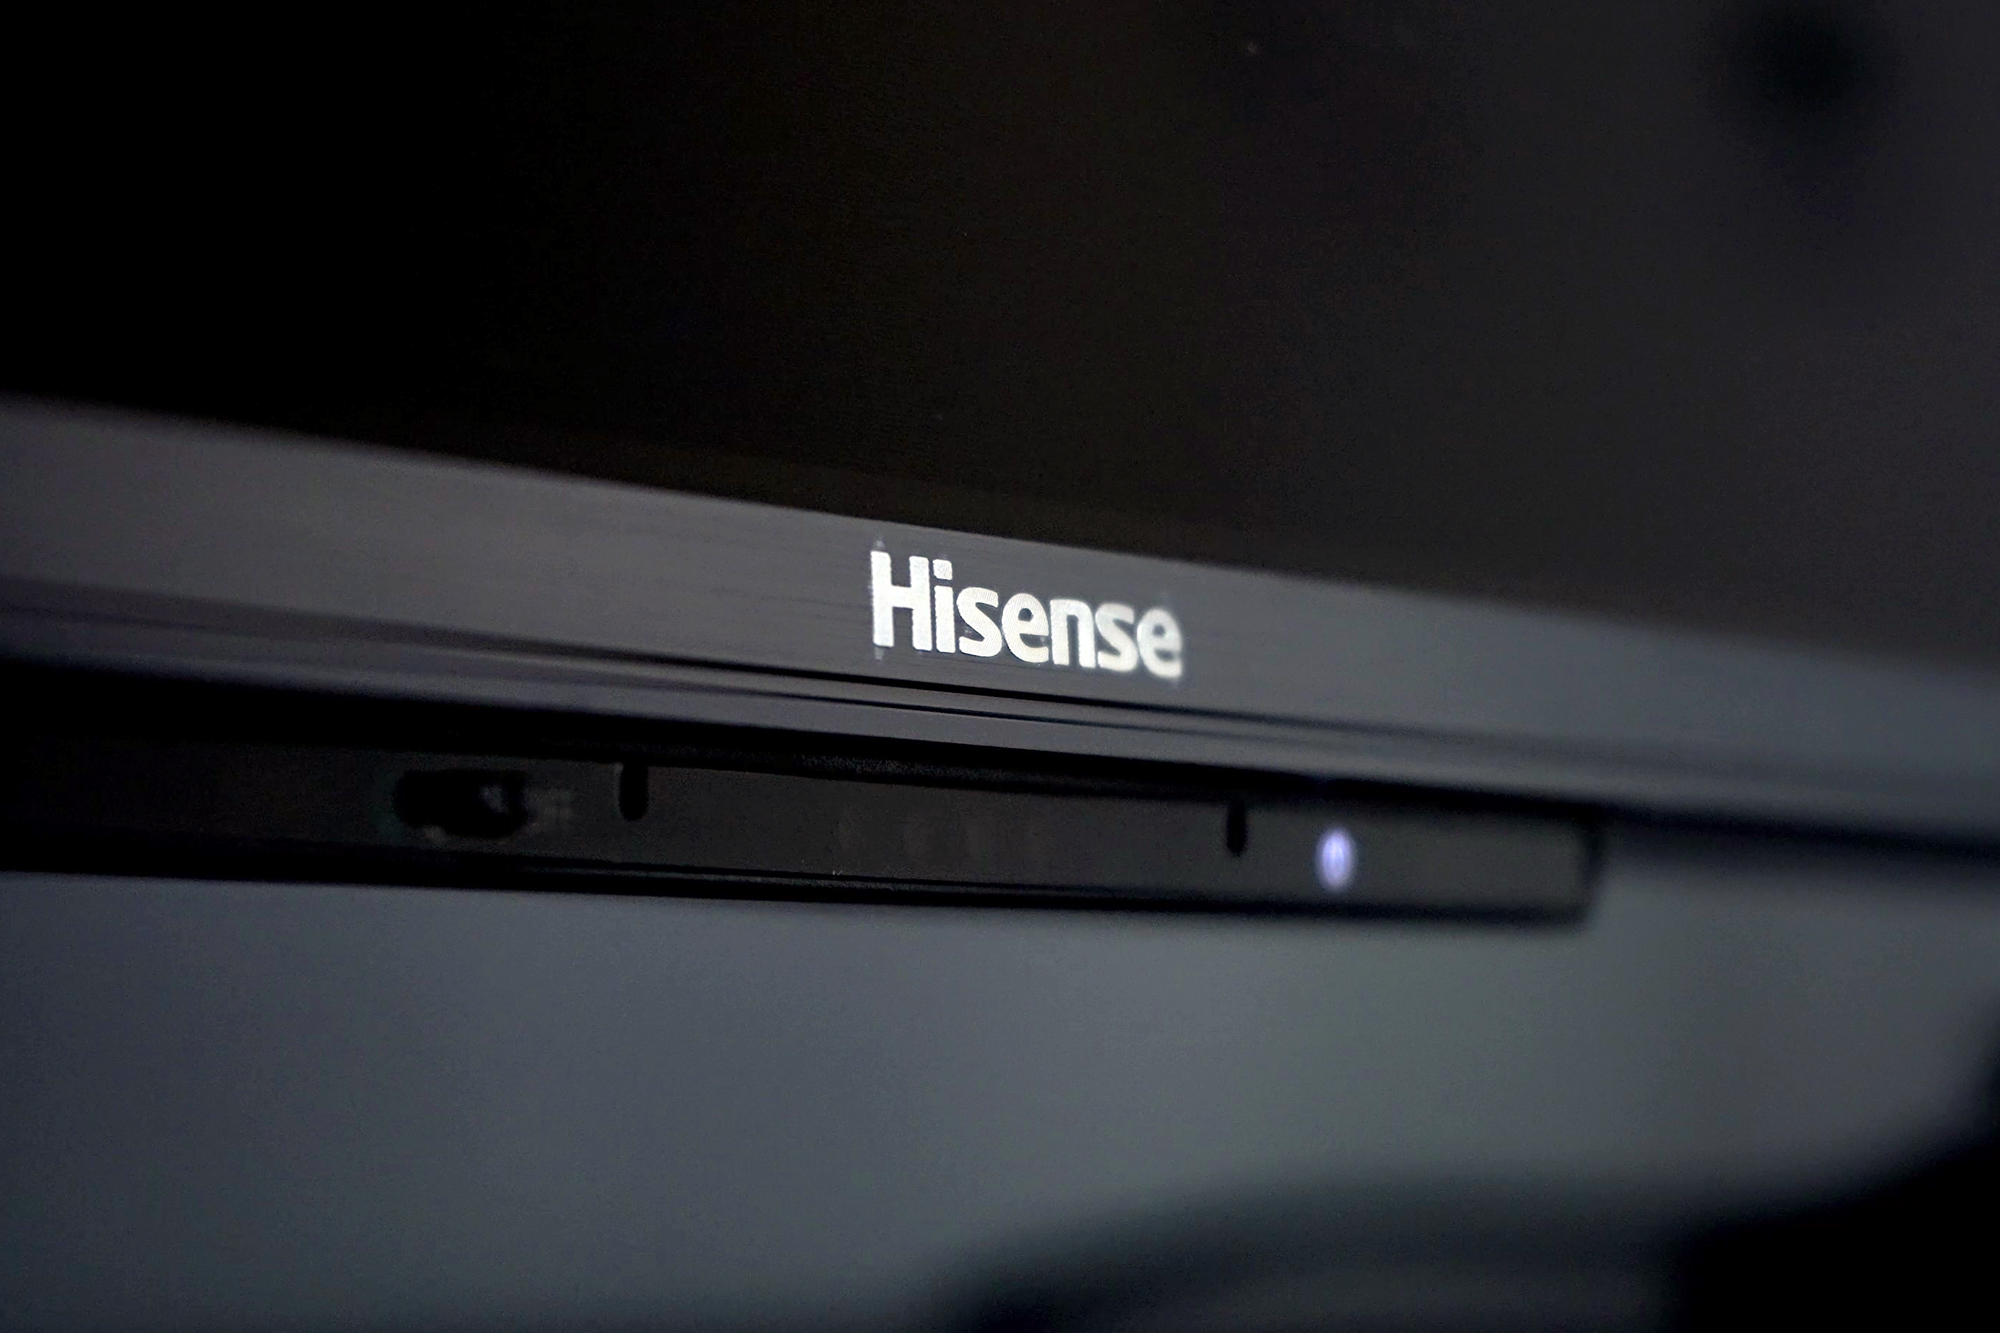 Close up of the brand name on the Hisense U8H 4K mini-LED TV.